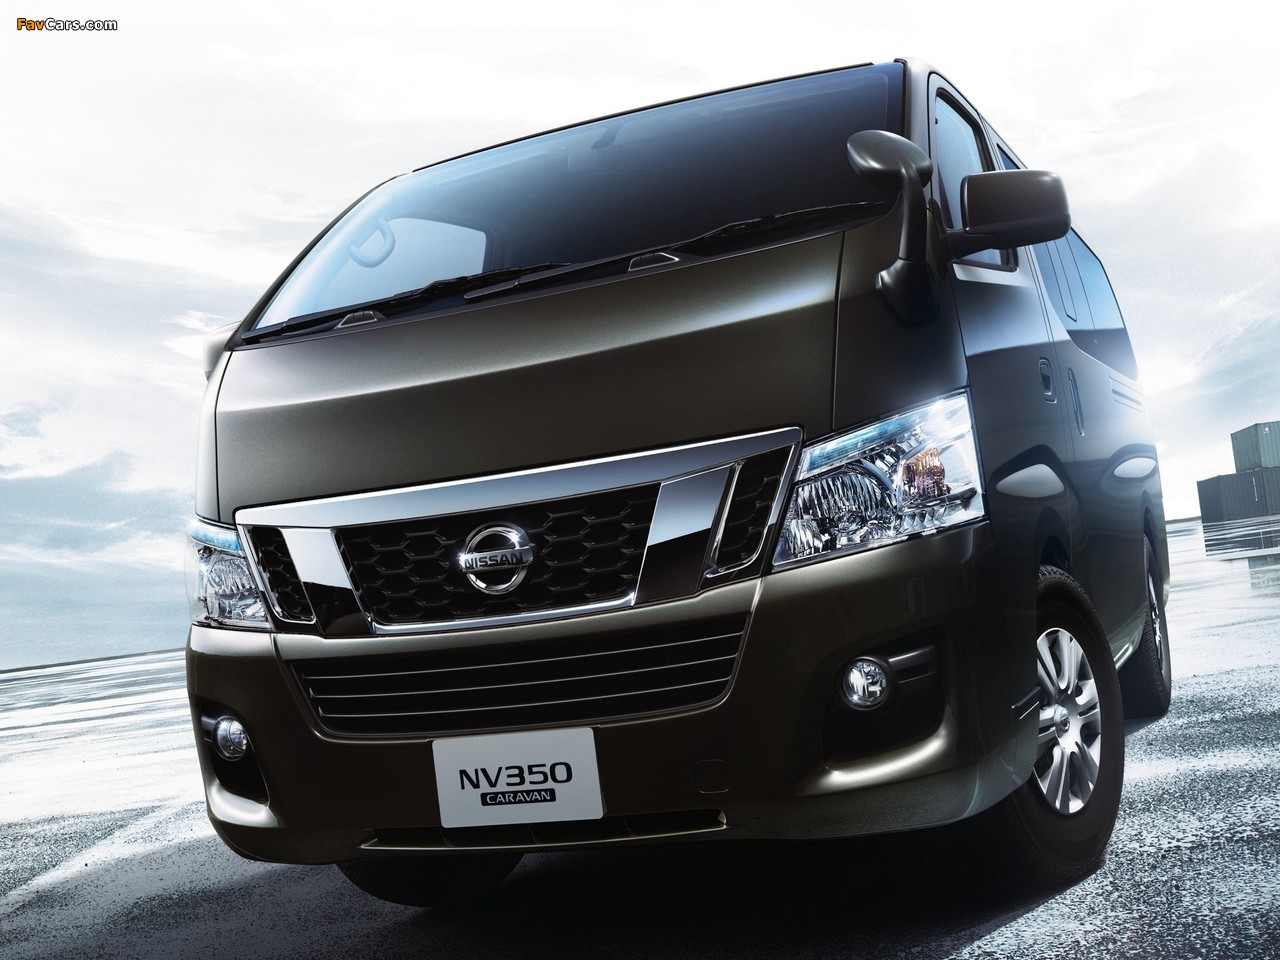 Nissan NV350 Caravan Premium GX (E26) 2012 pictures (1280 x 960)